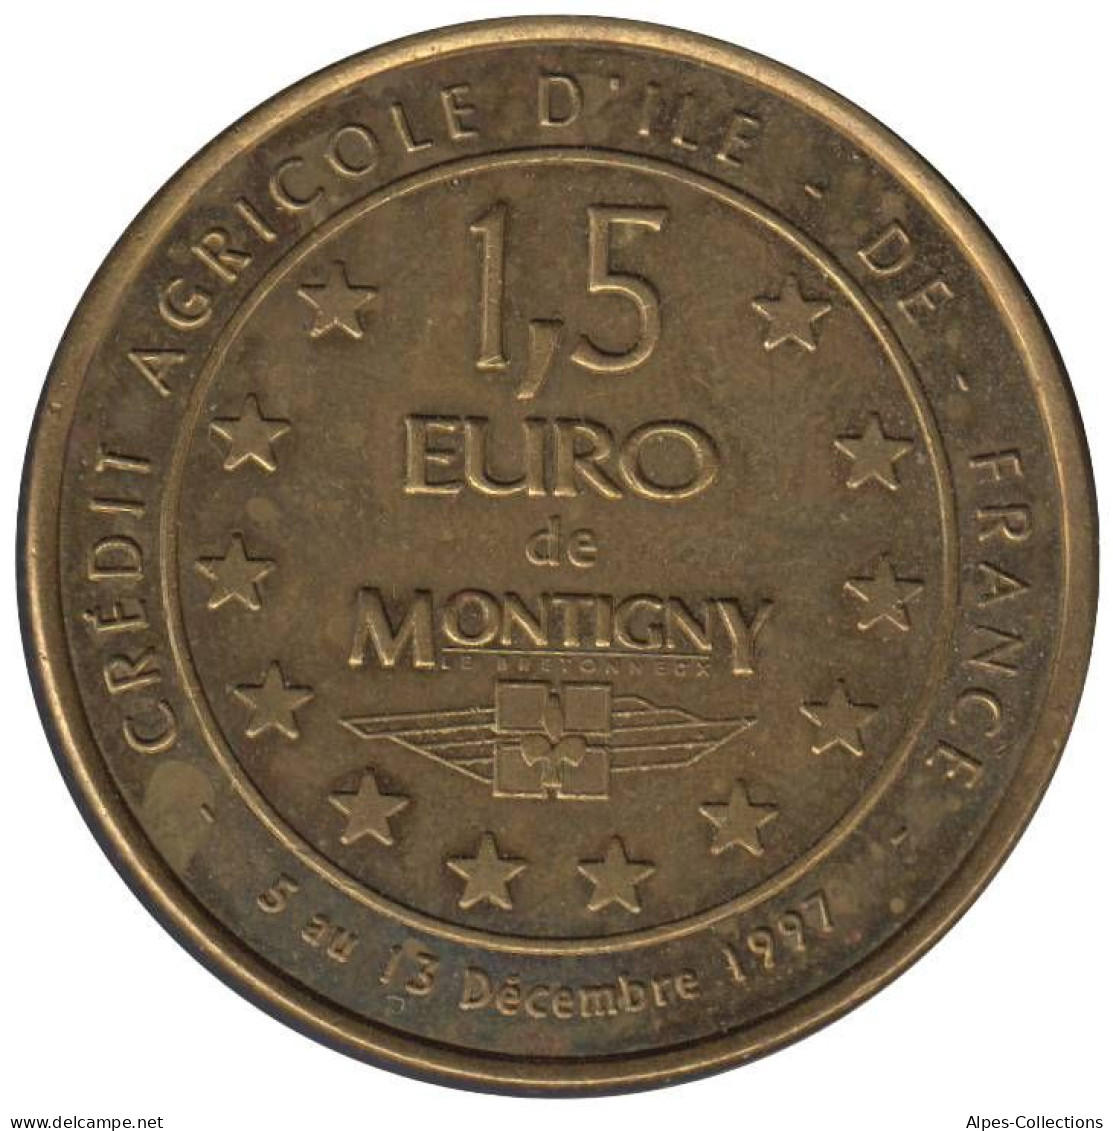 MONTIGNY - EU0015.1 - 1,5 EURO DES VILLES - Réf: NR - 1997 - Euro Van De Steden